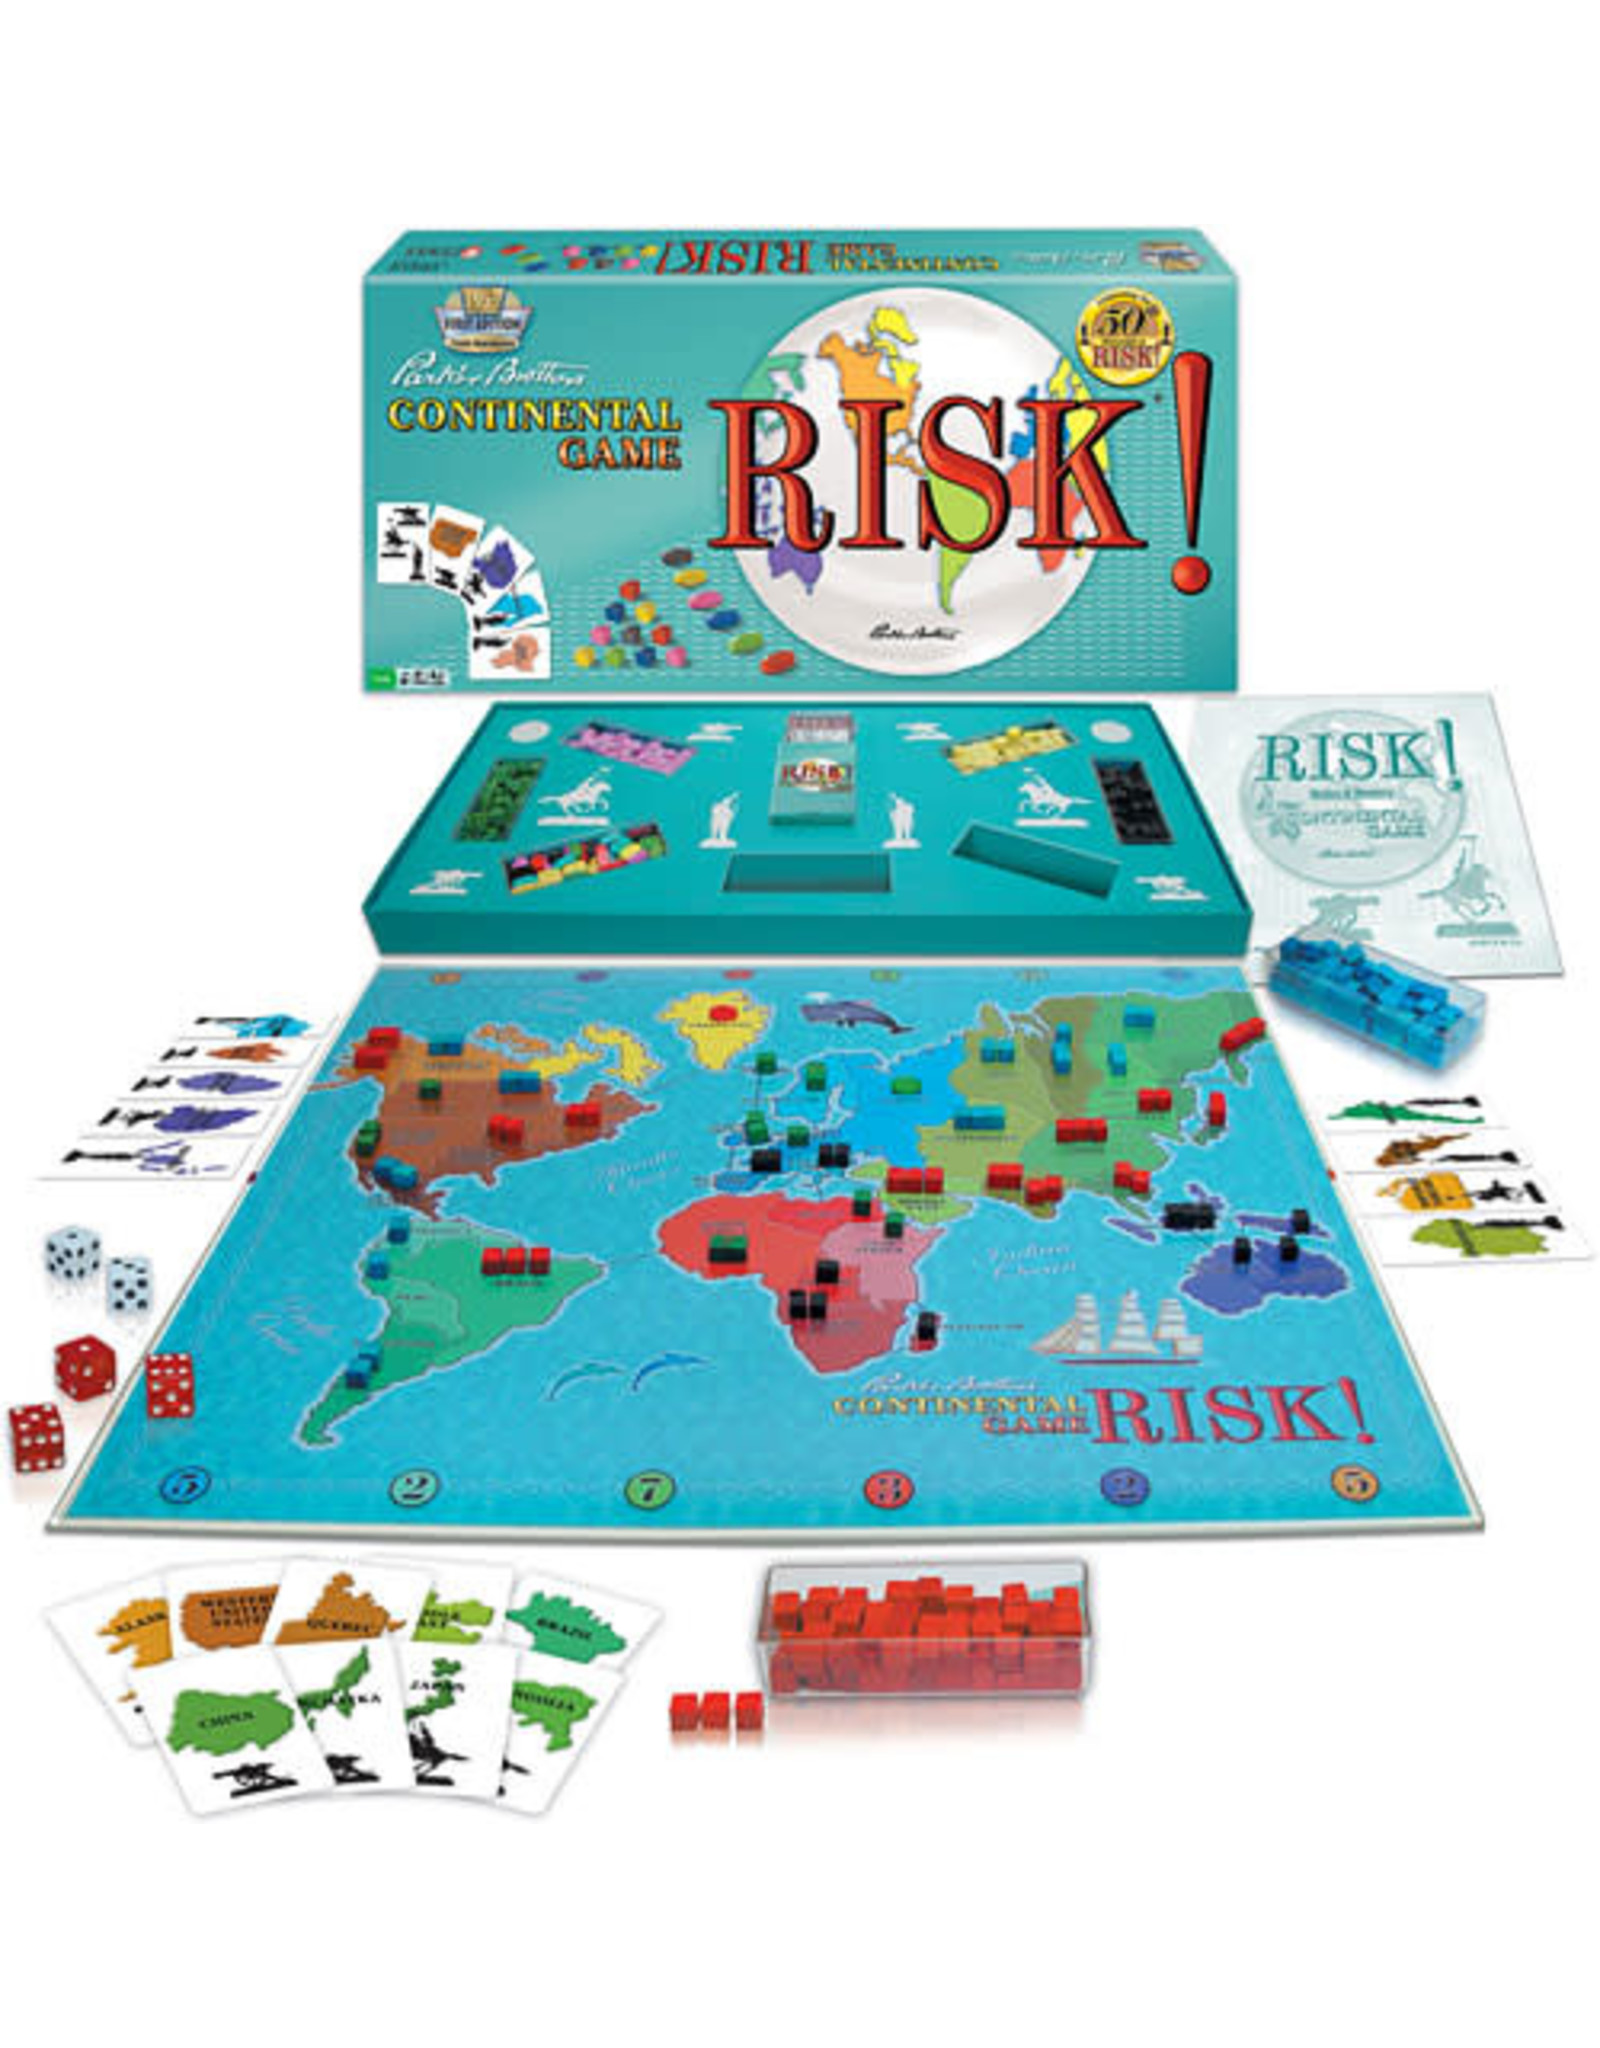 Risk Classic Edition (1959)